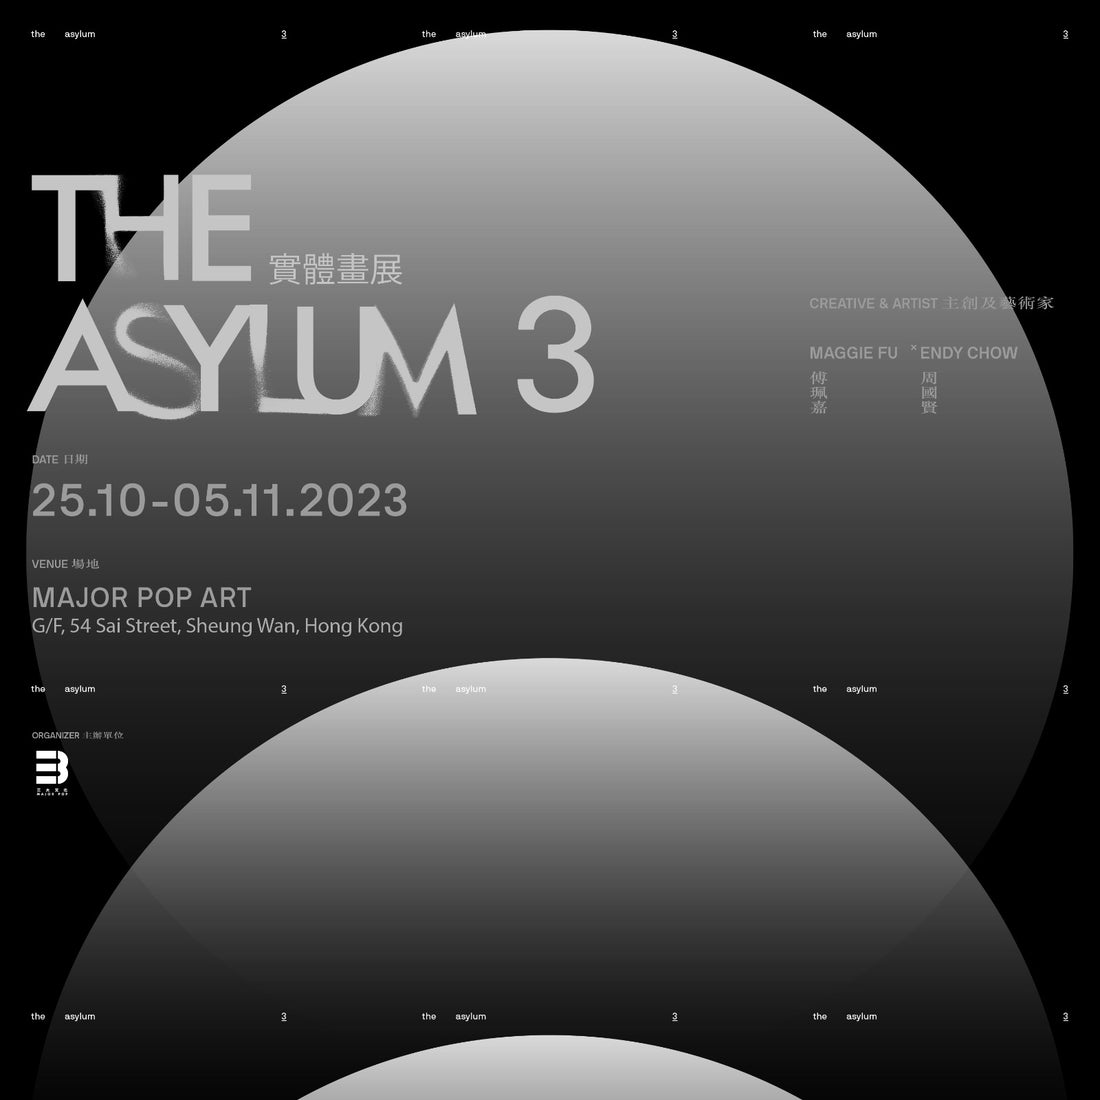 THE ASYLUM 3 實體畫展